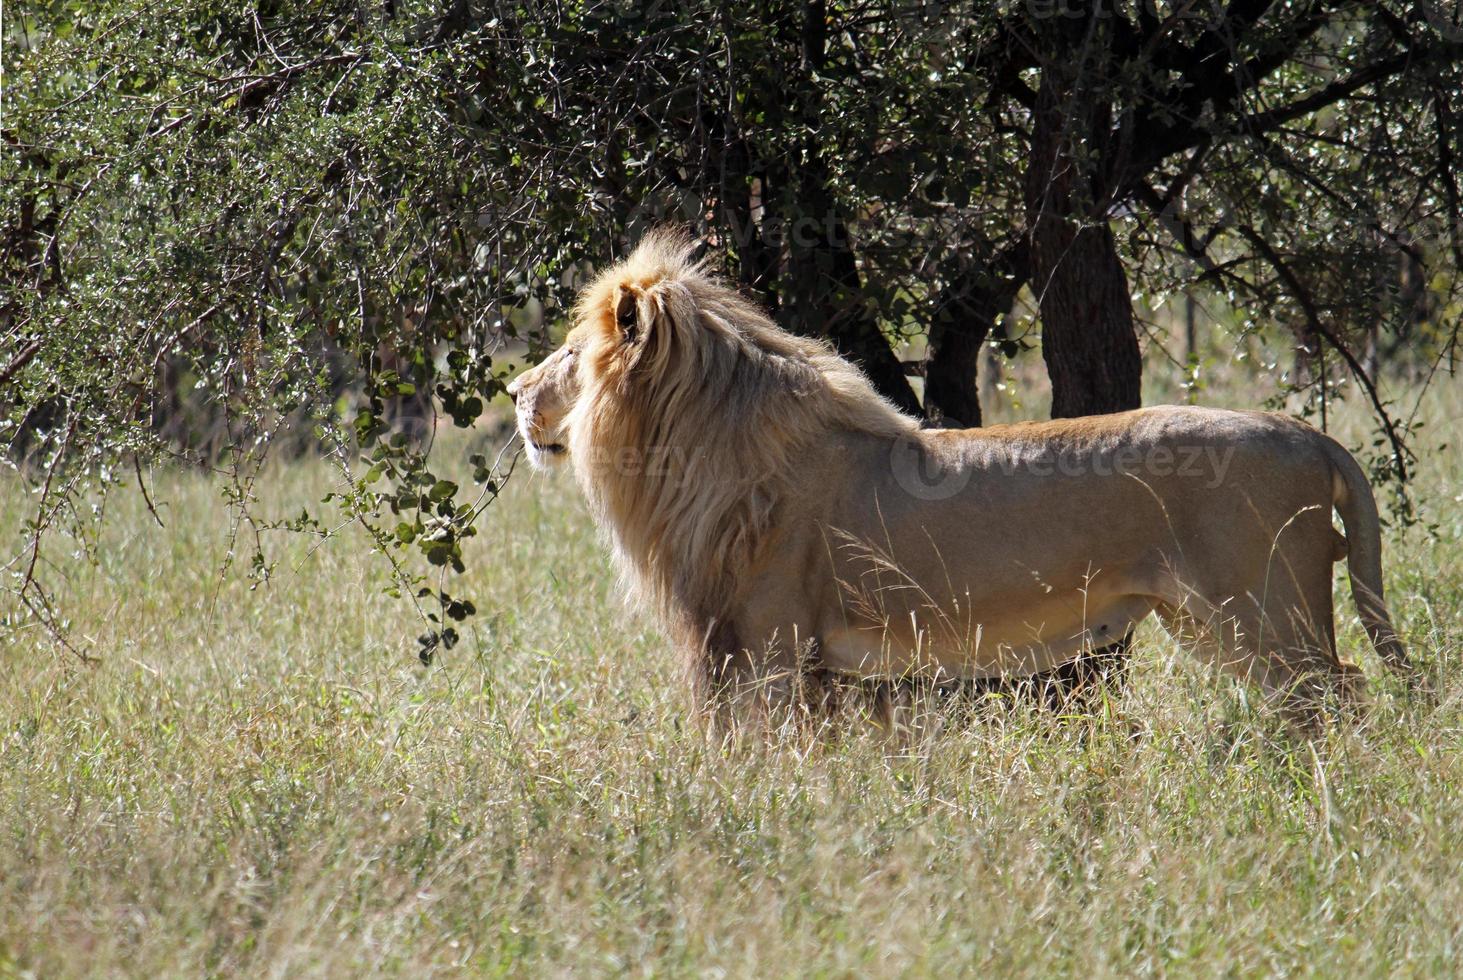 lion dans les hautes herbes examinant les environs photo